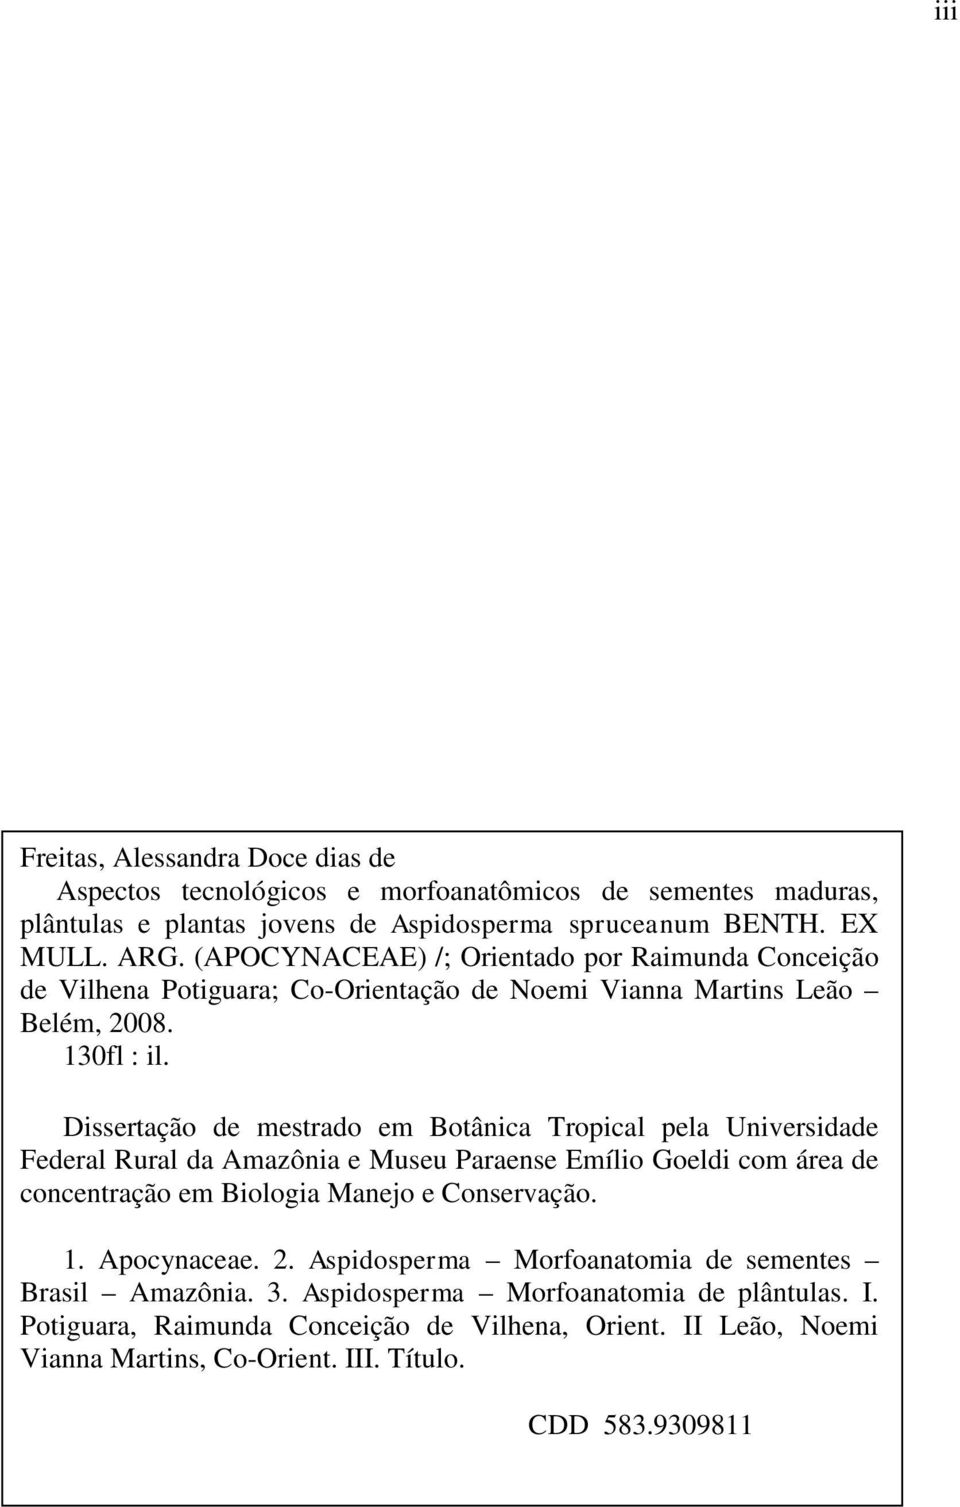 Dissertação de mestrado em Botânica Tropical pela Universidade Federal Rural da Amazônia e Museu Paraense Emílio Goeldi com área de concentração em Biologia Manejo e Conservação. 1.